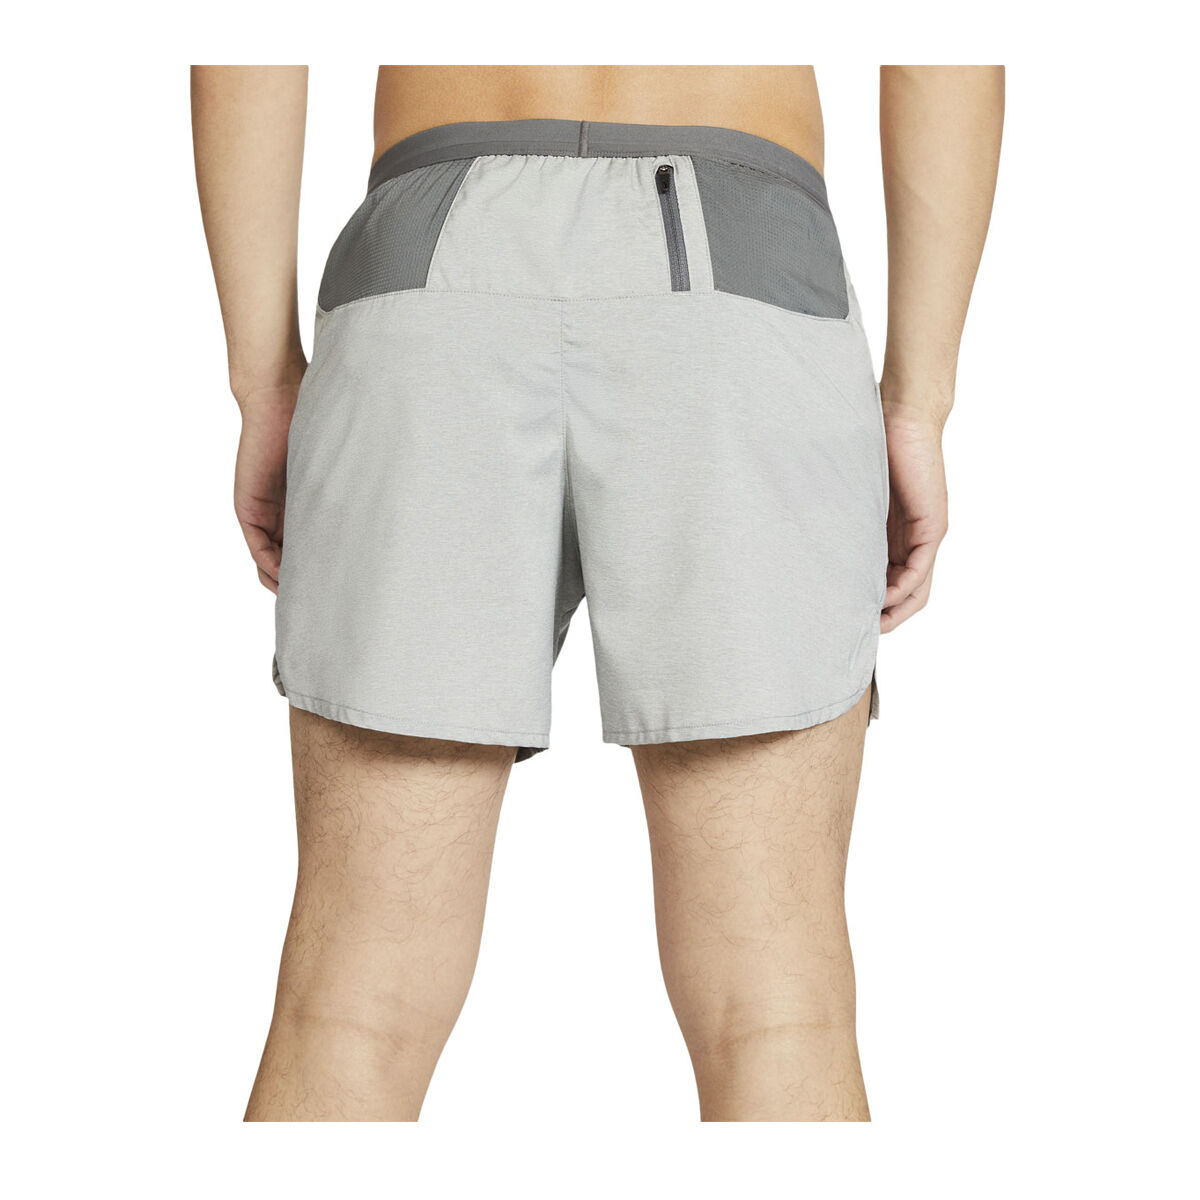 nike flex 5 inch running shorts